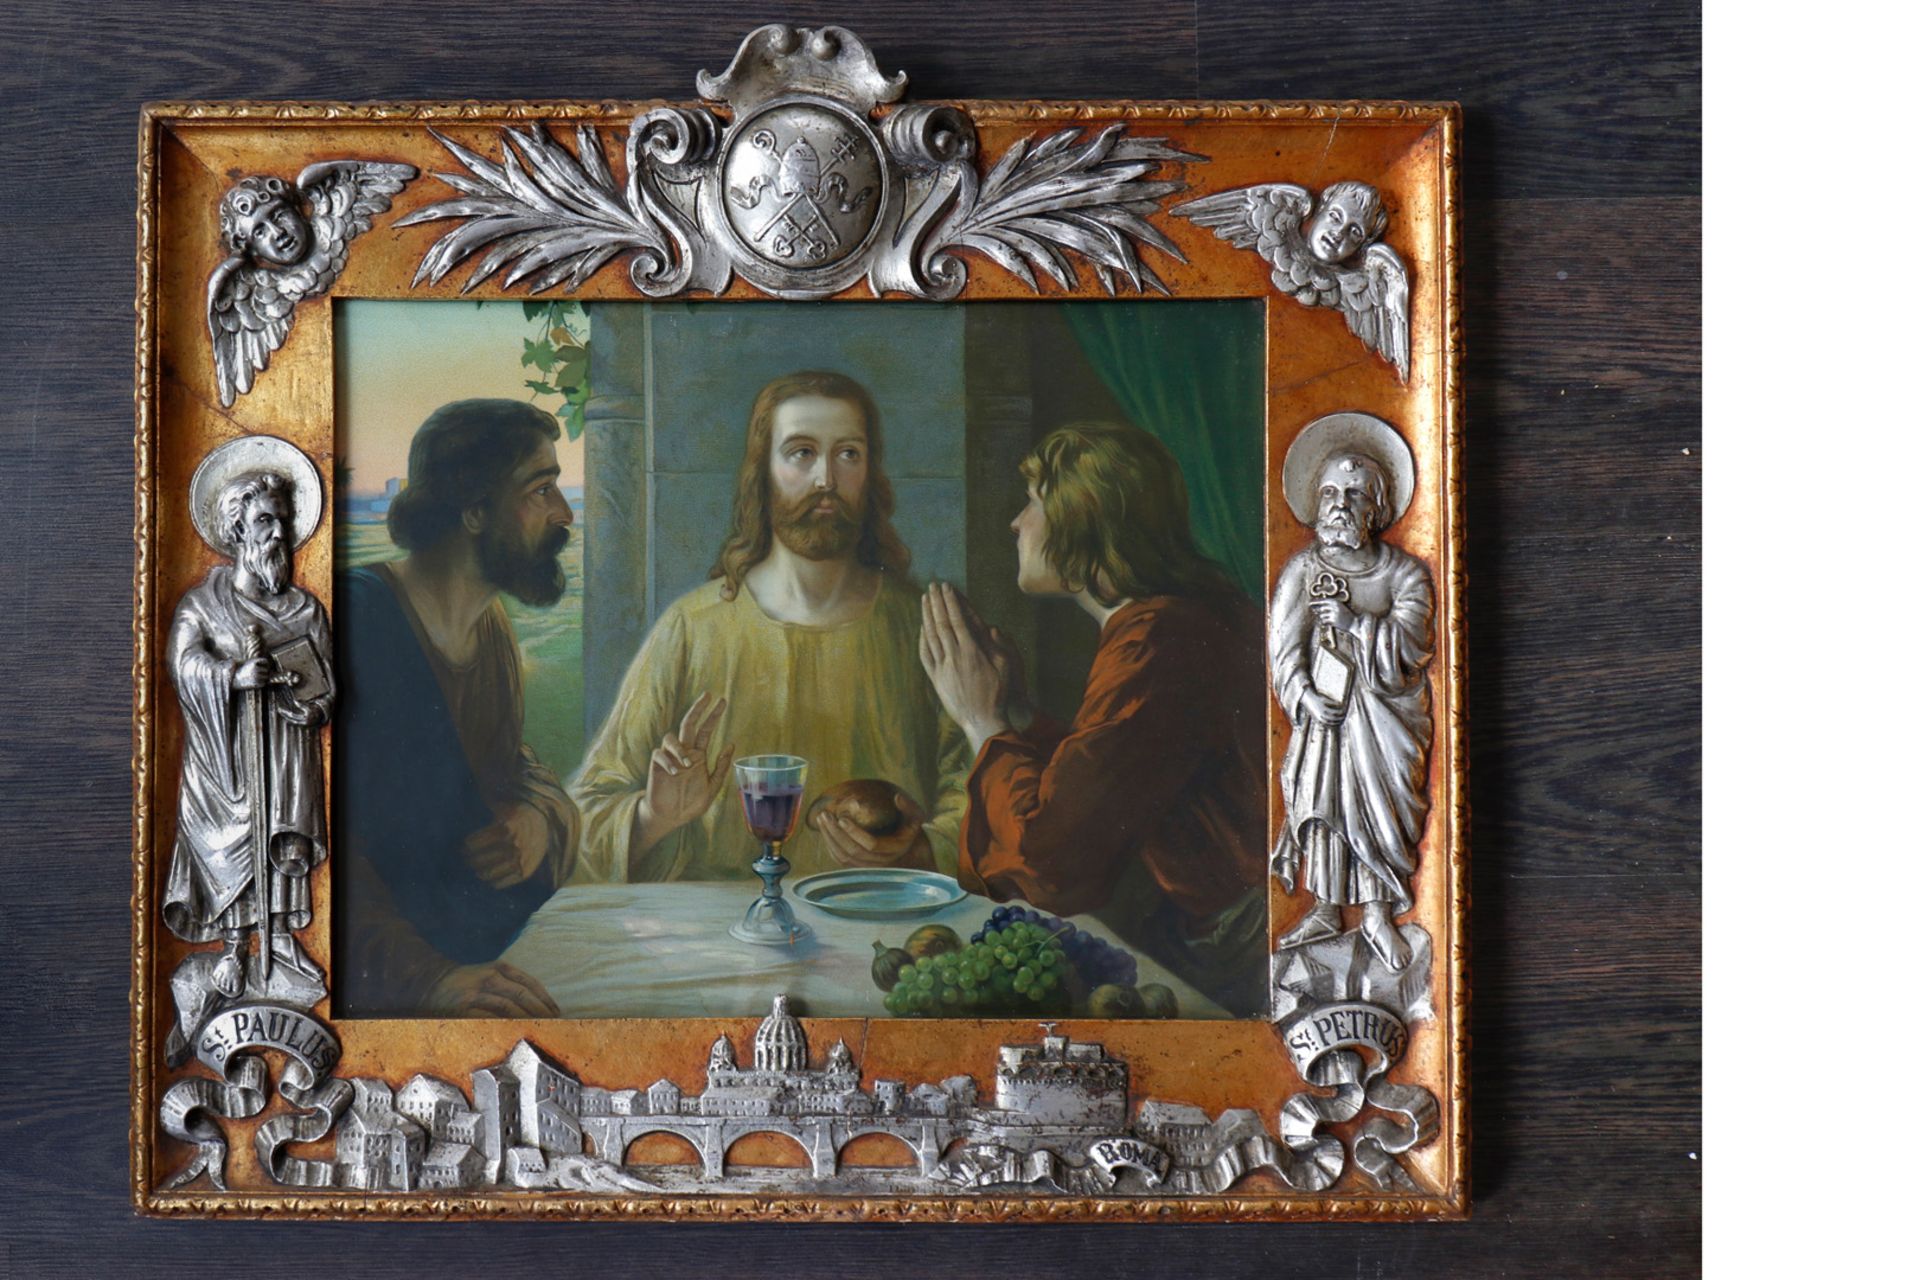 Farbdruck Heiligenbild, Jesus mit Jüngern, um 1900, in stark verziertem reliefiertem Stuckrahmen,